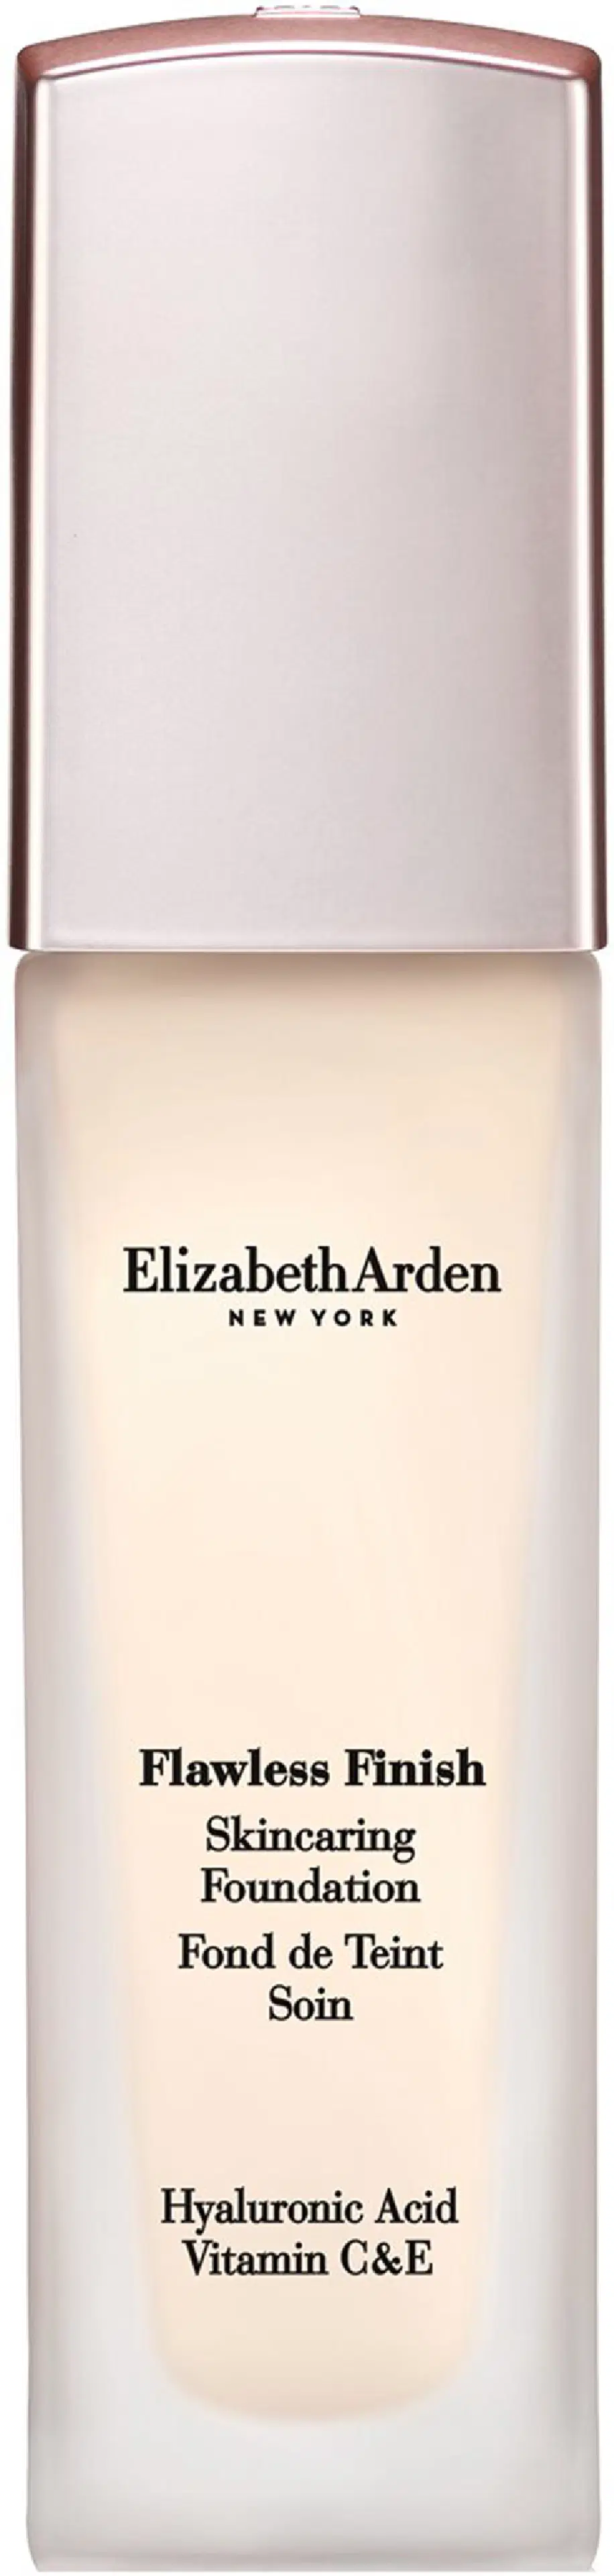 Elizabeth Arden Flawless Finish Foundation meikkivoide 30 ml